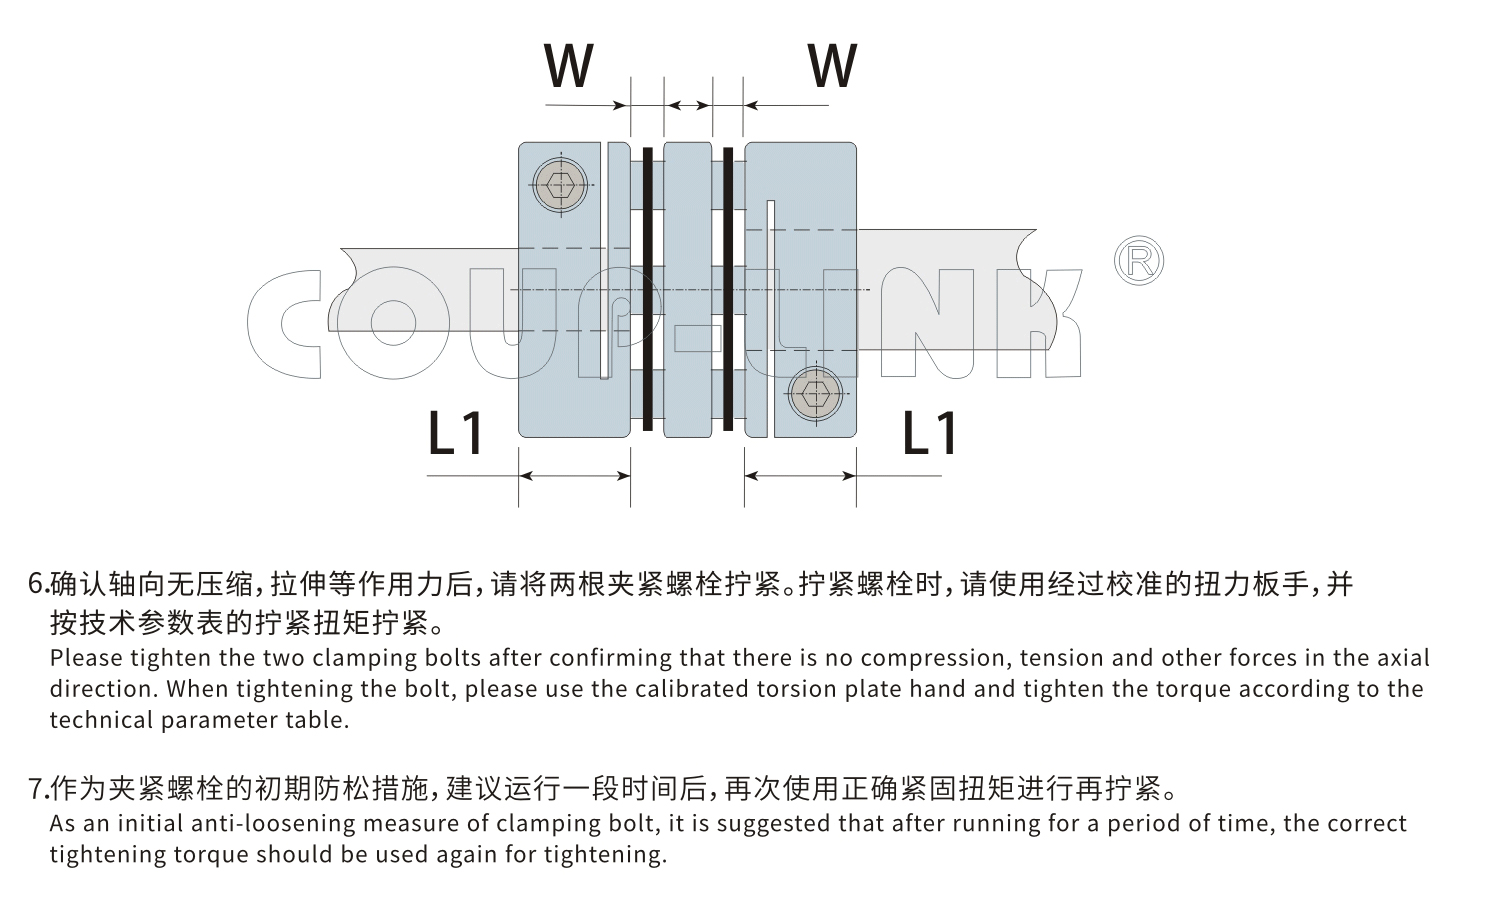 LK5系列 单节夹紧螺丝固定式（膜片联轴器）_联轴器种类-广州菱科自动化设备有限公司